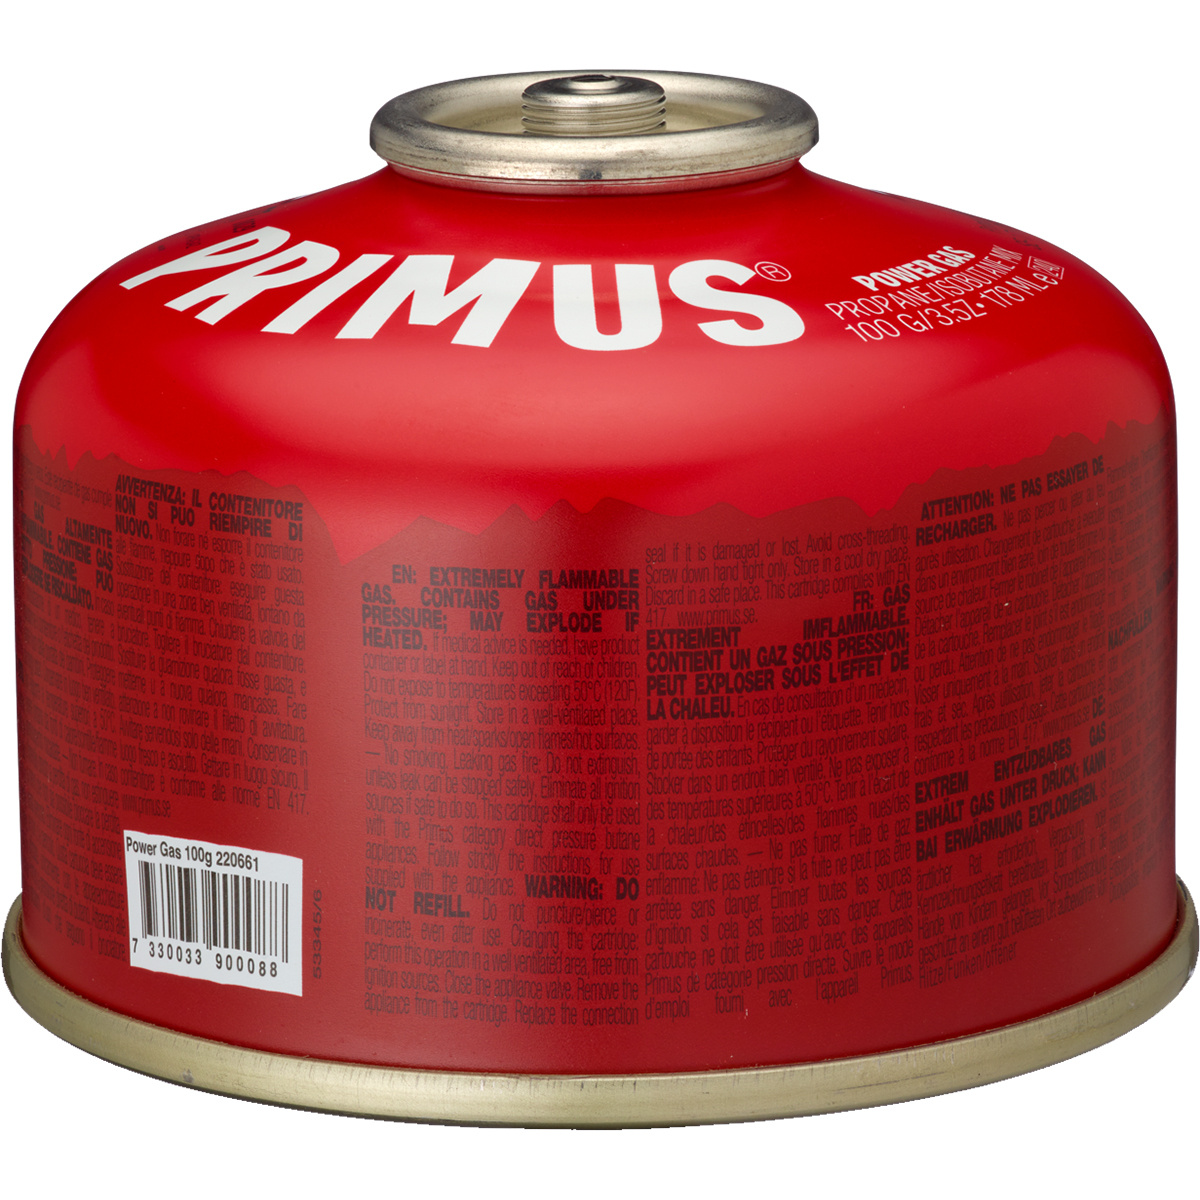 Image of Primus Gas Power